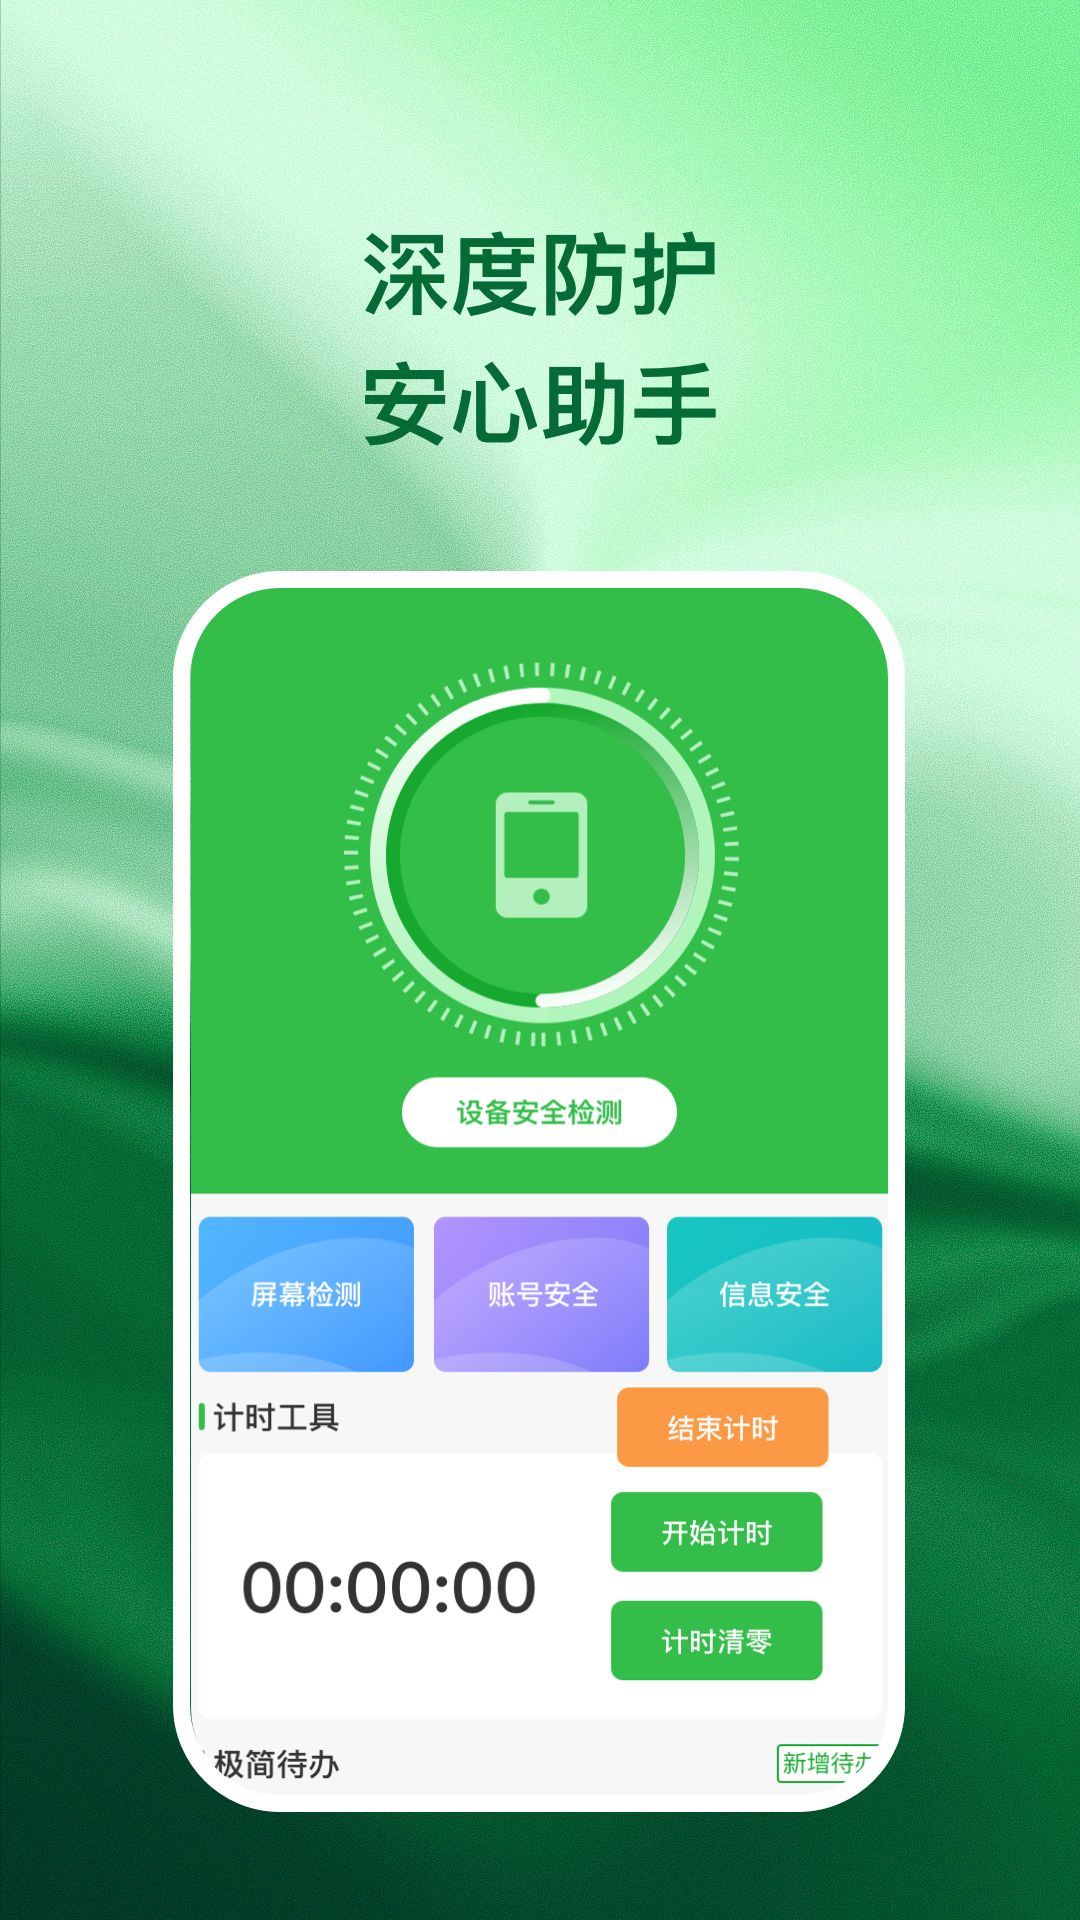 兴诚手机助手app下载,兴诚手机助手app官方版 v1.0.6